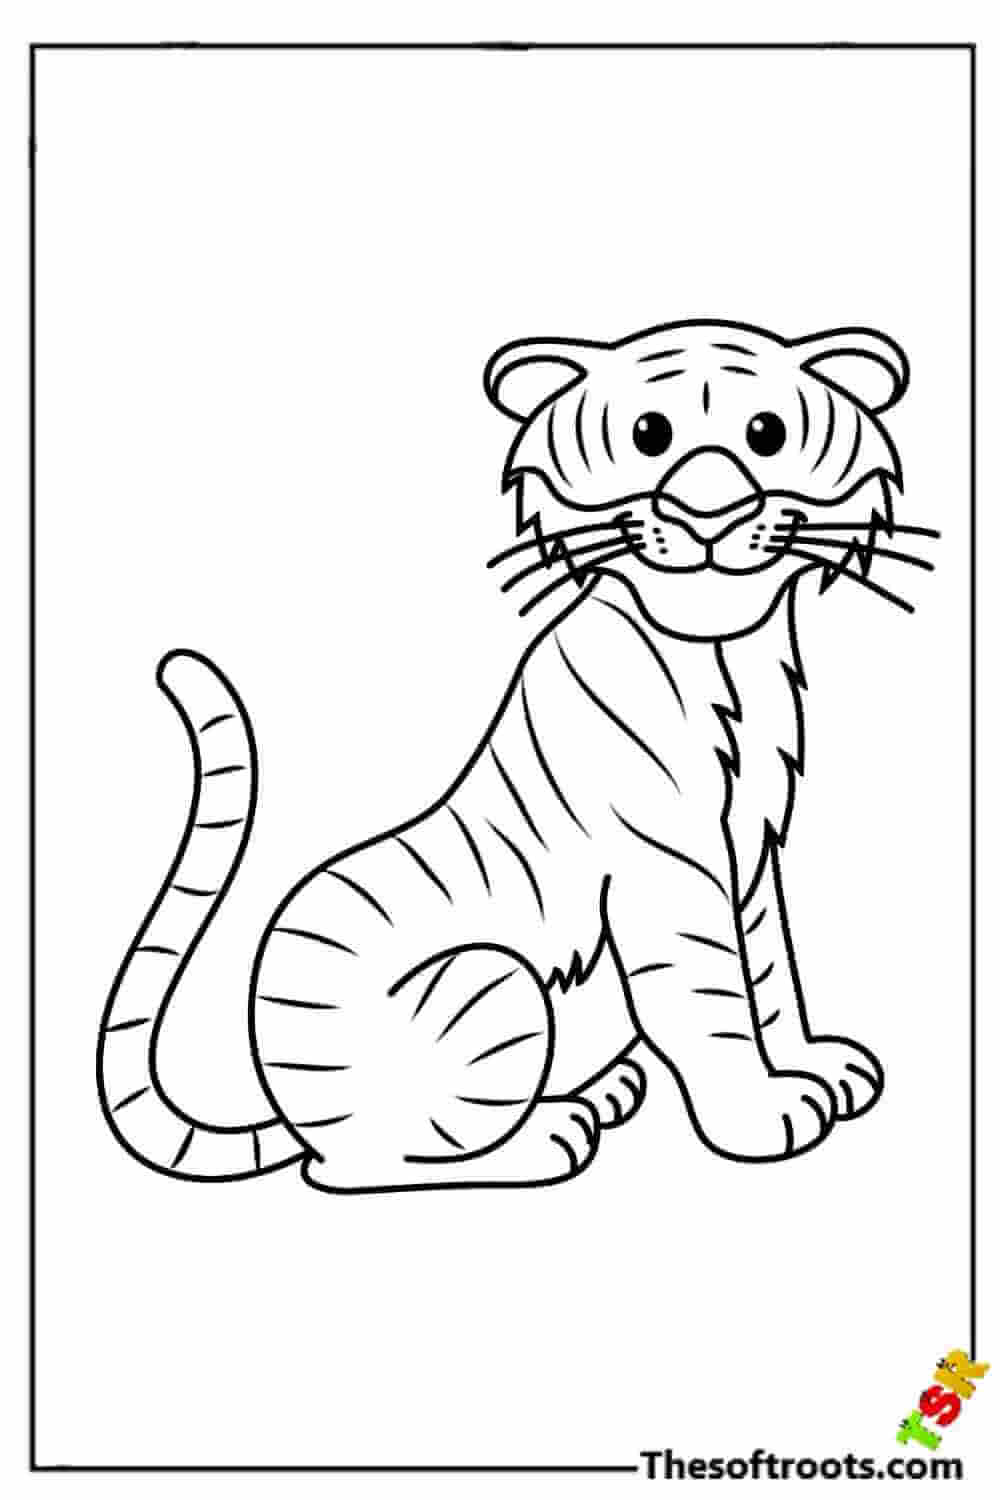 Happy cartoon tiger coloring pages